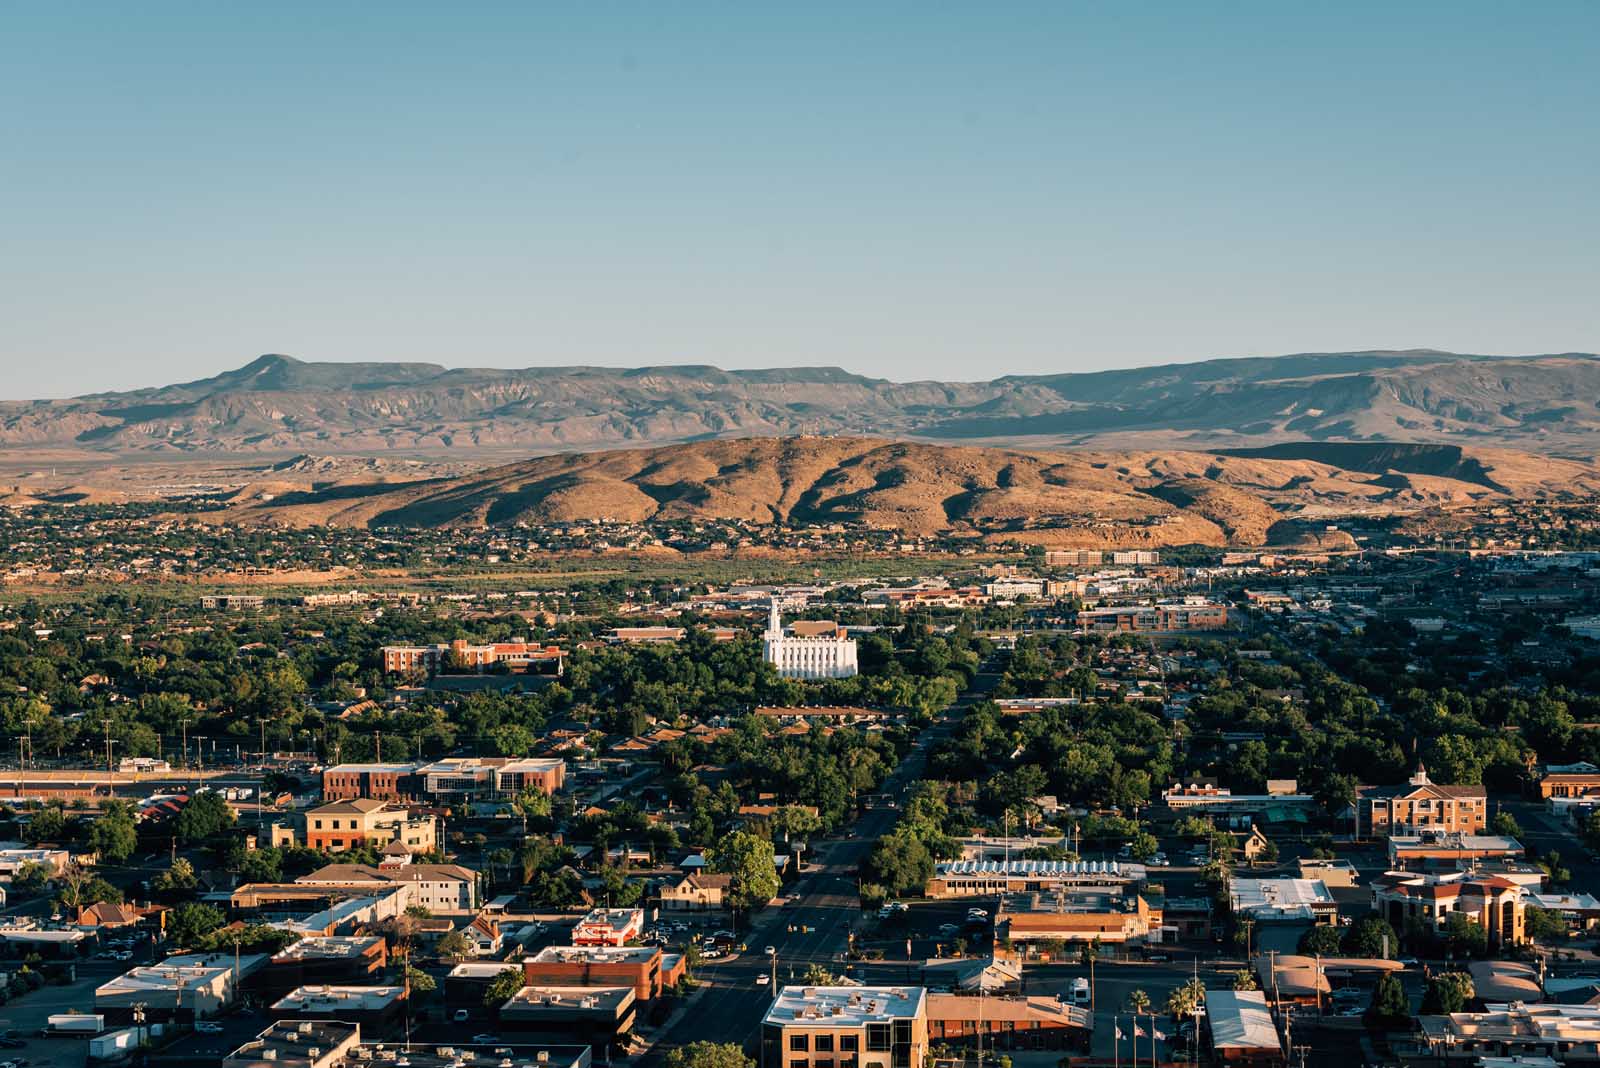 View from Pioneer Park, in St. George, Utah